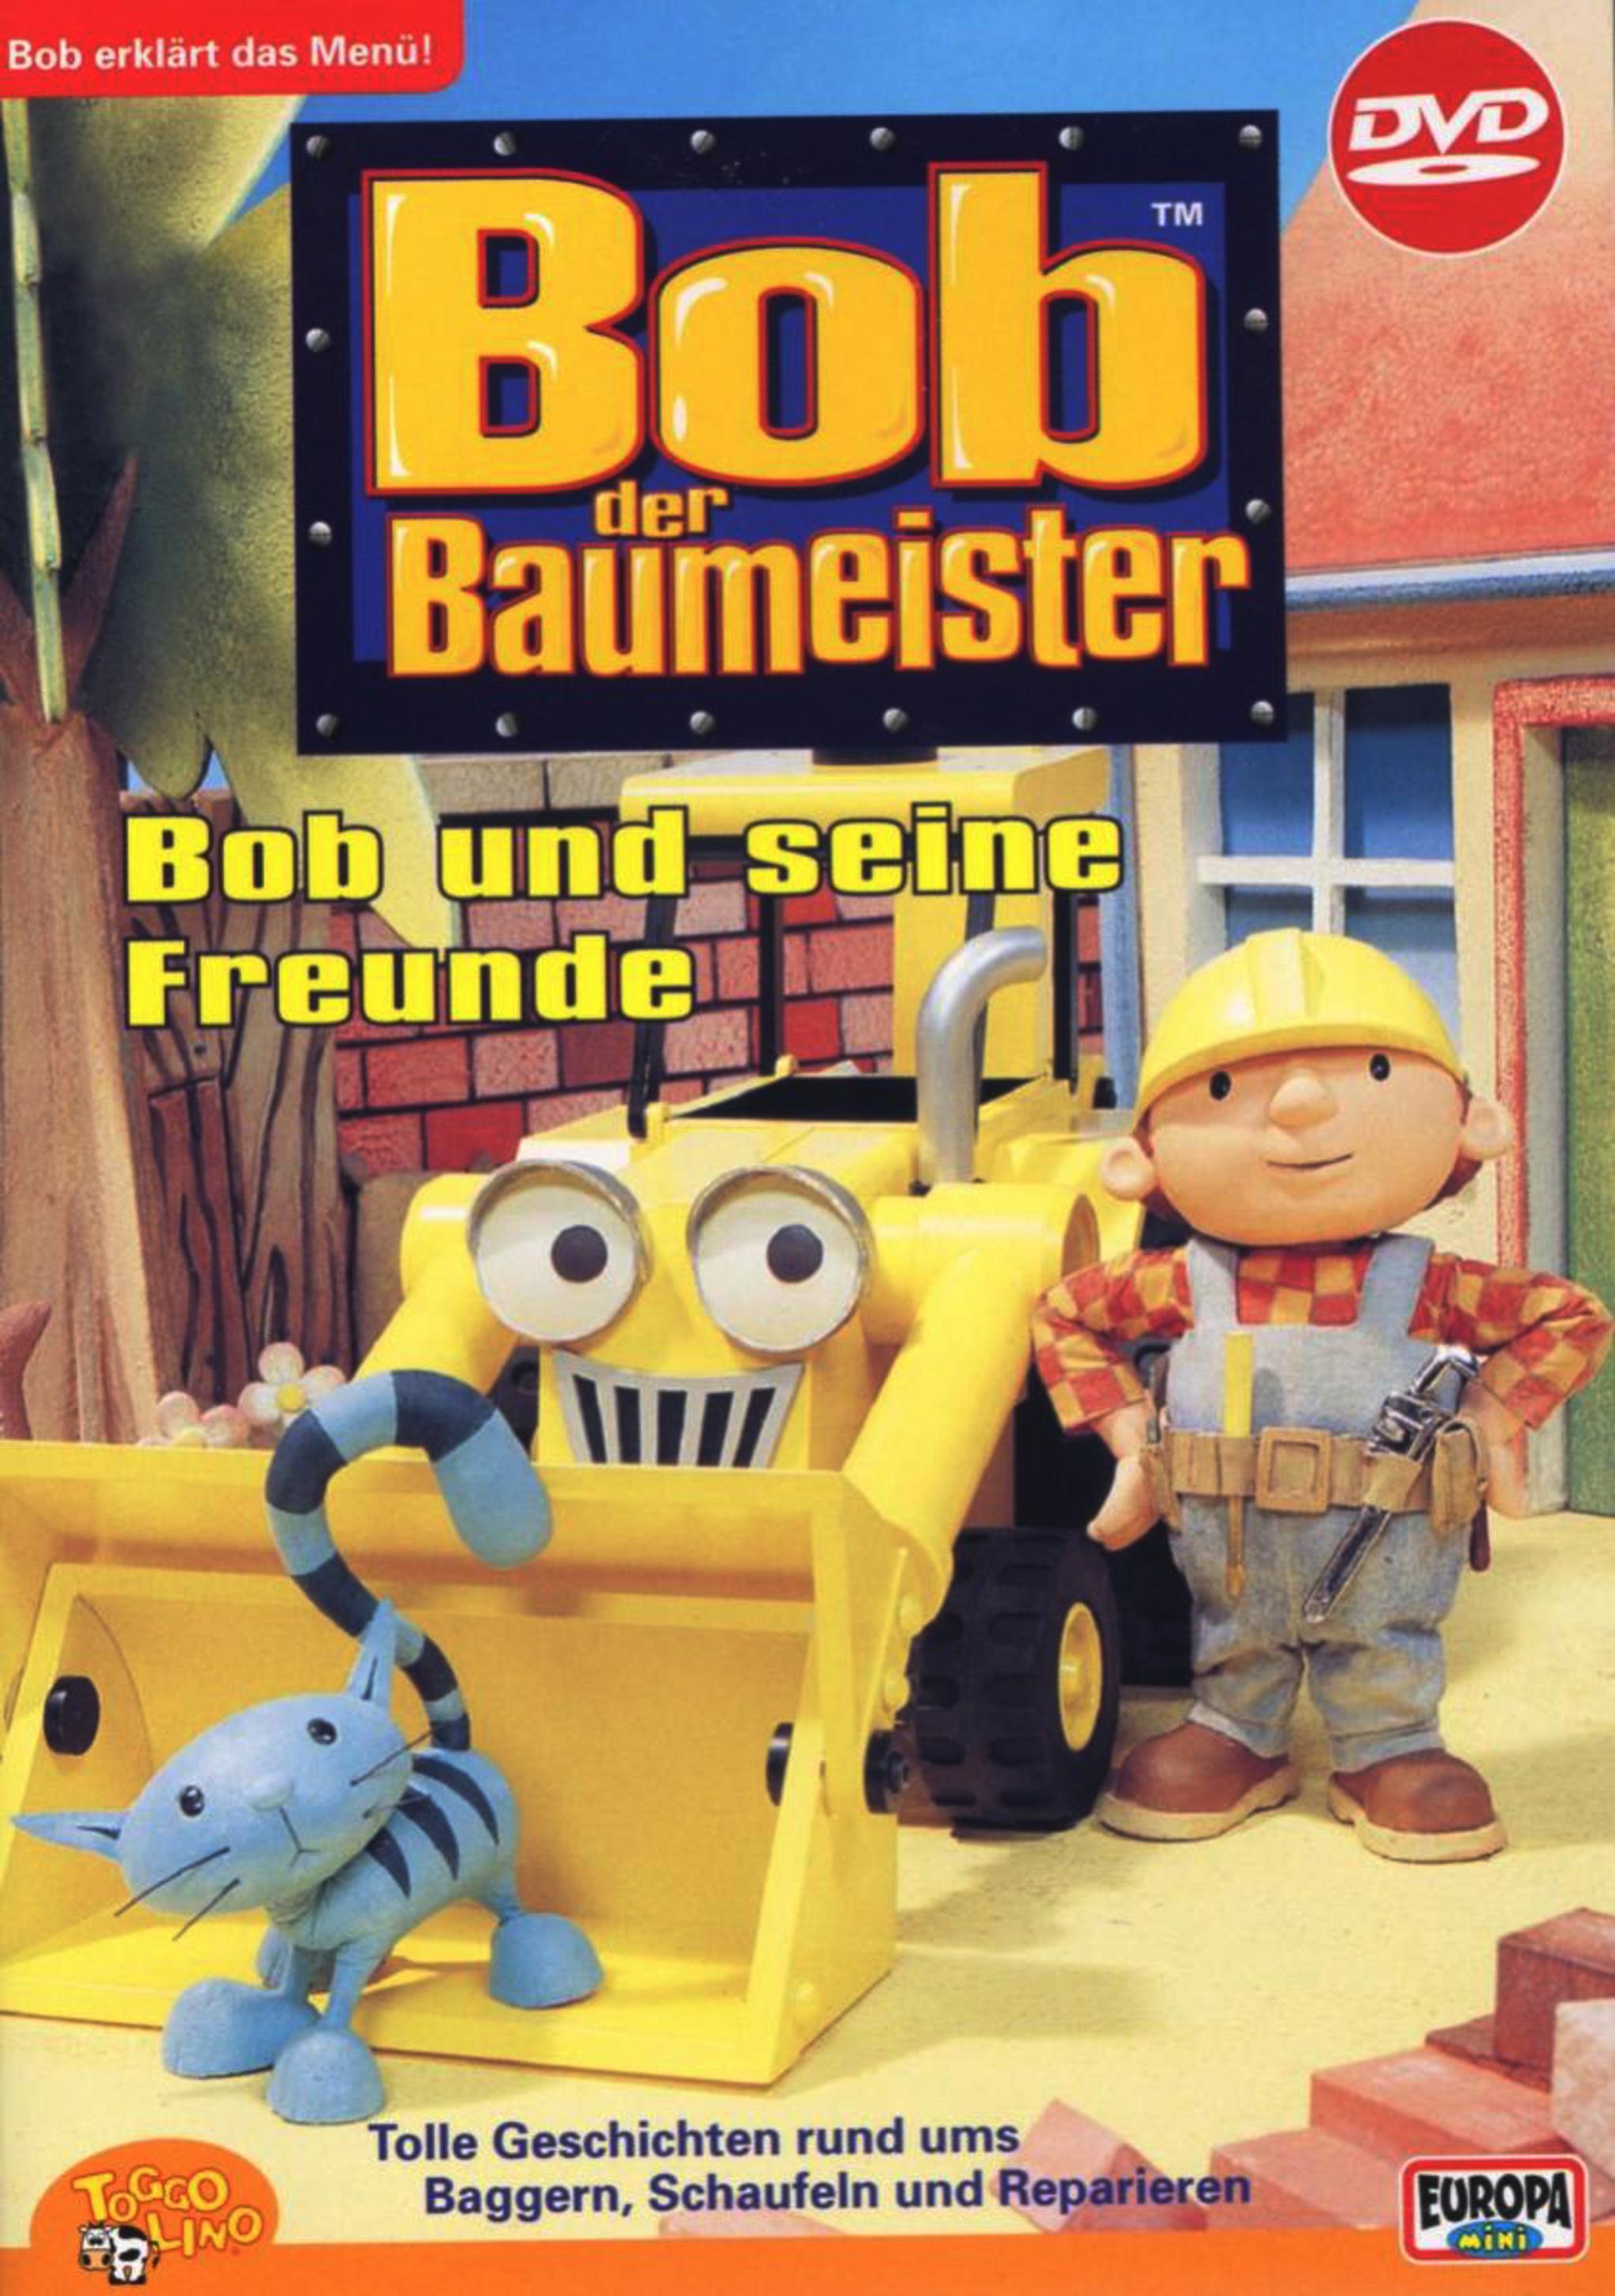 Wer streamt Bob der Baumeister? Serie online schauen